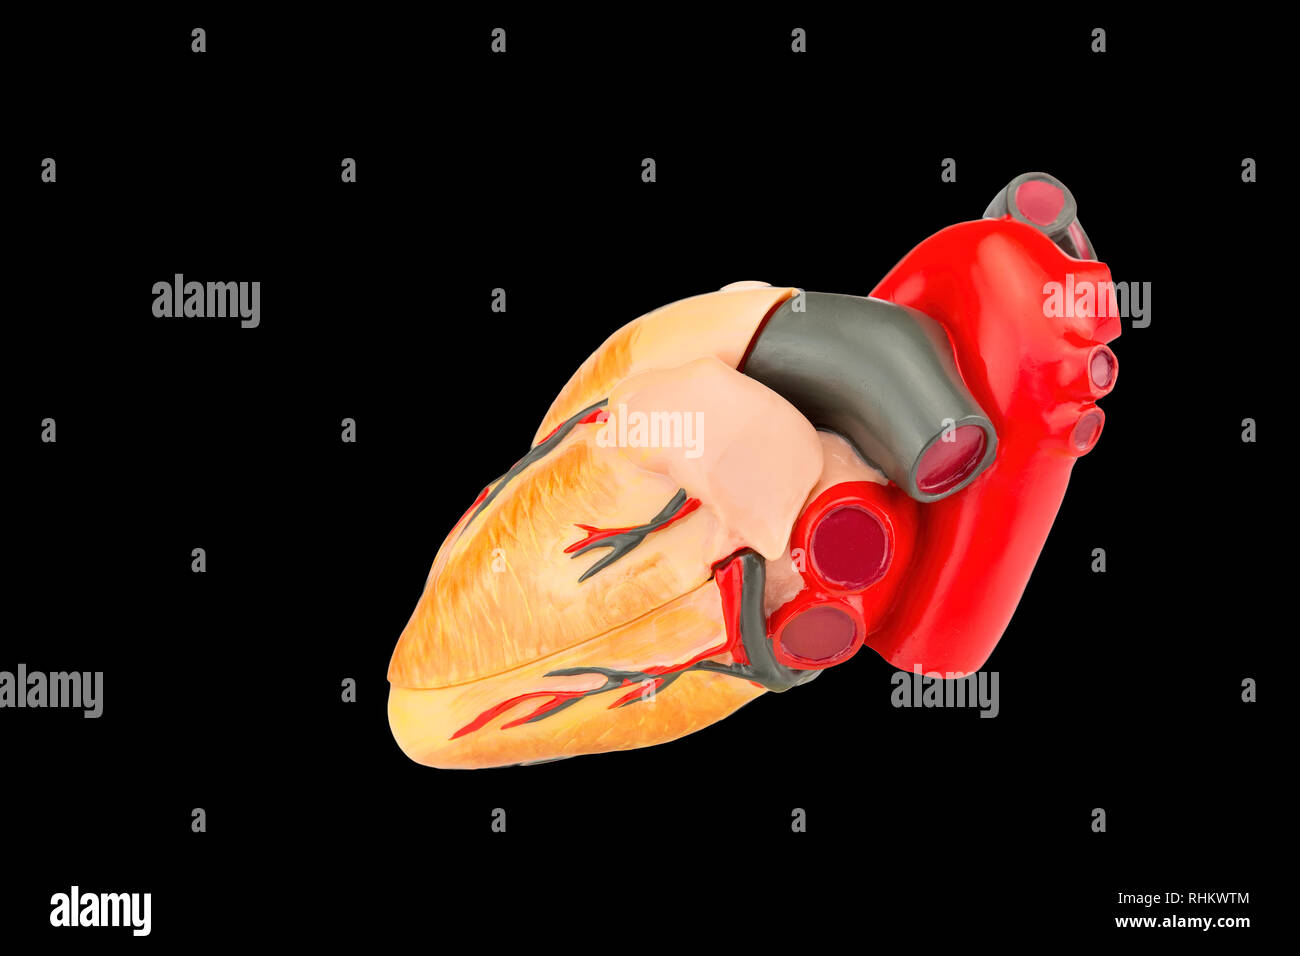 Modelo de corazón humano artificial aislado sobre fondo negro Foto de stock